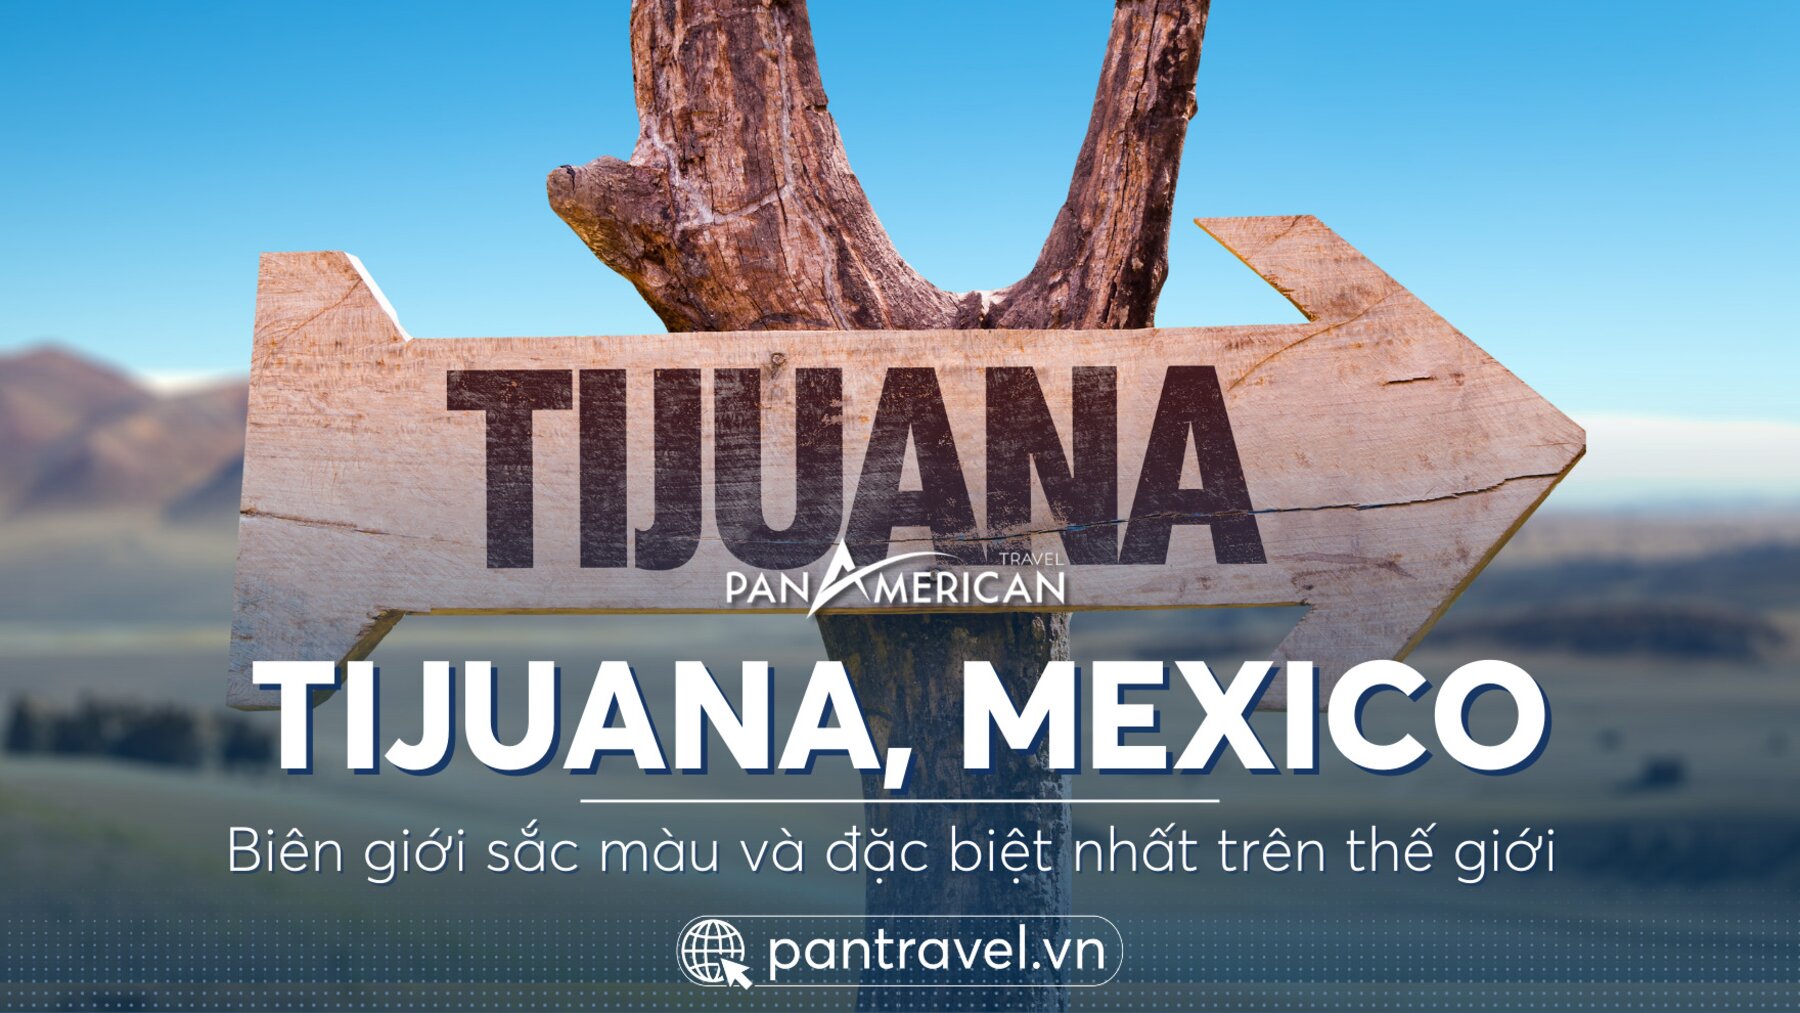 Tijuana - Biên giới sắc màu ấn tượng nhất thế giới